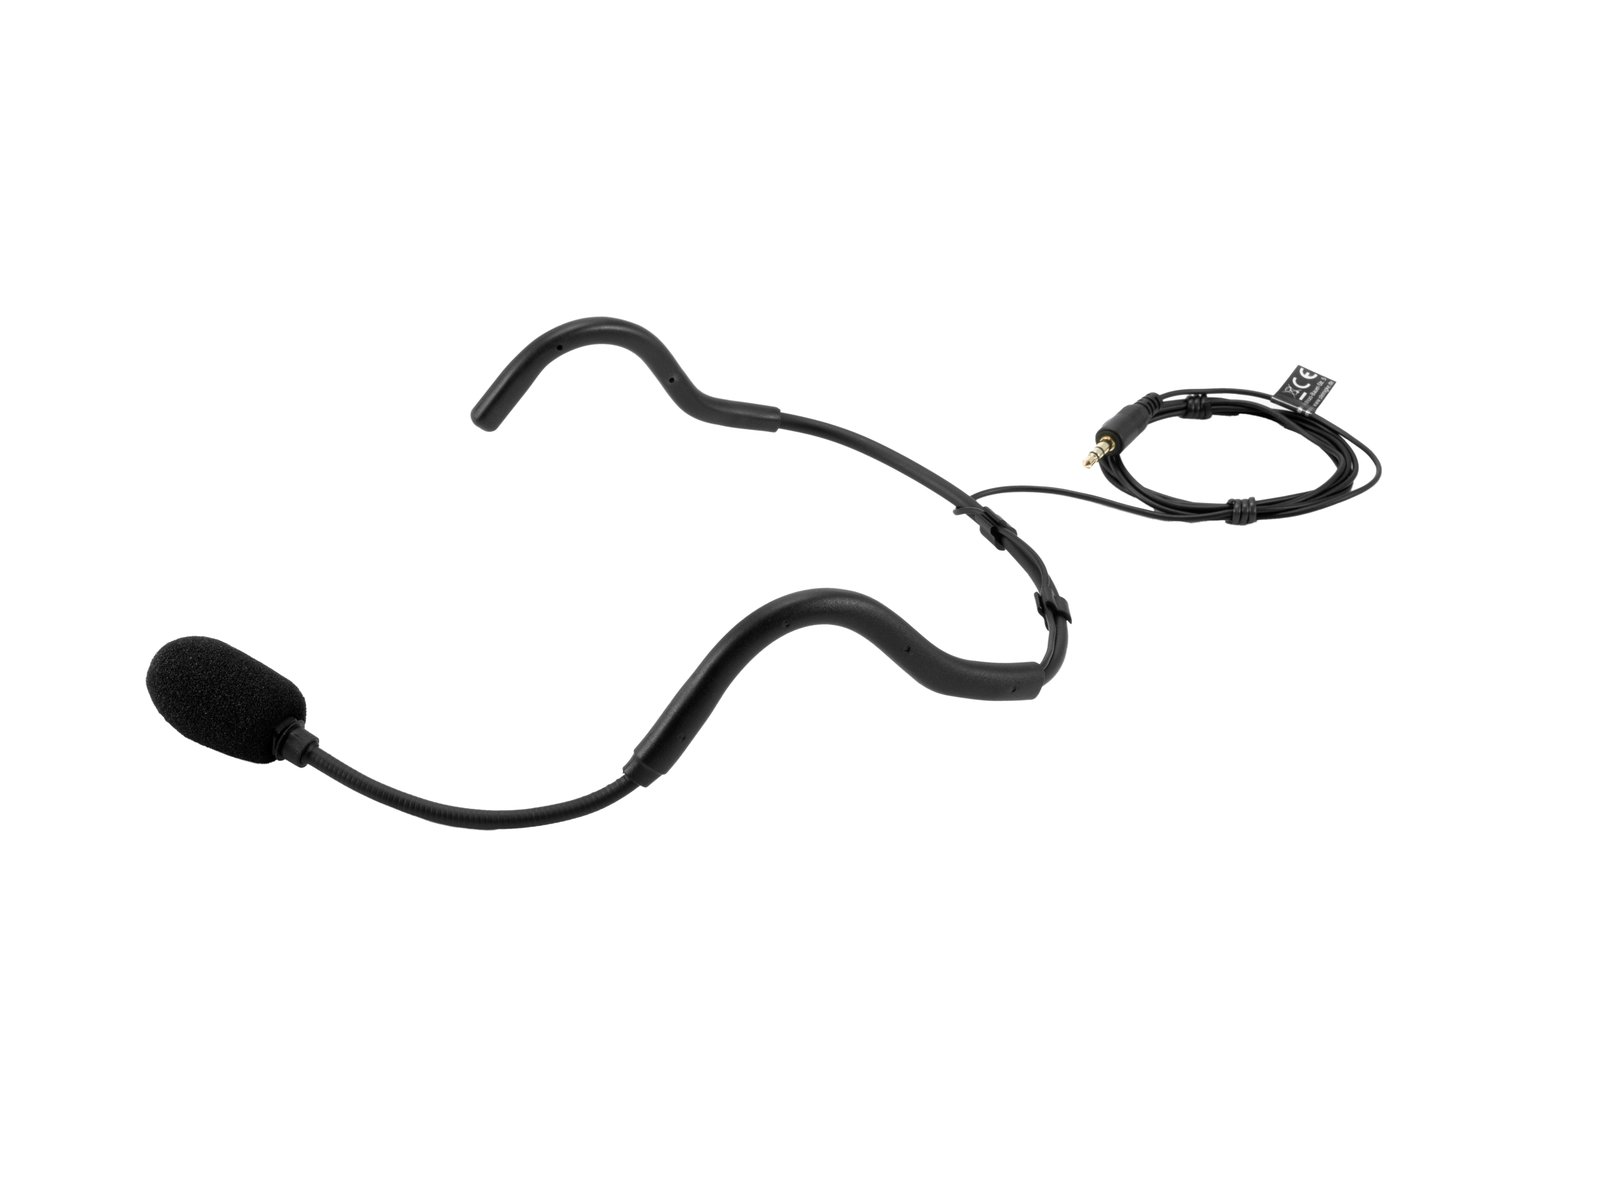 OMNITRONIC FAS Sport-Kopfbügelmikrofon für Taschensender